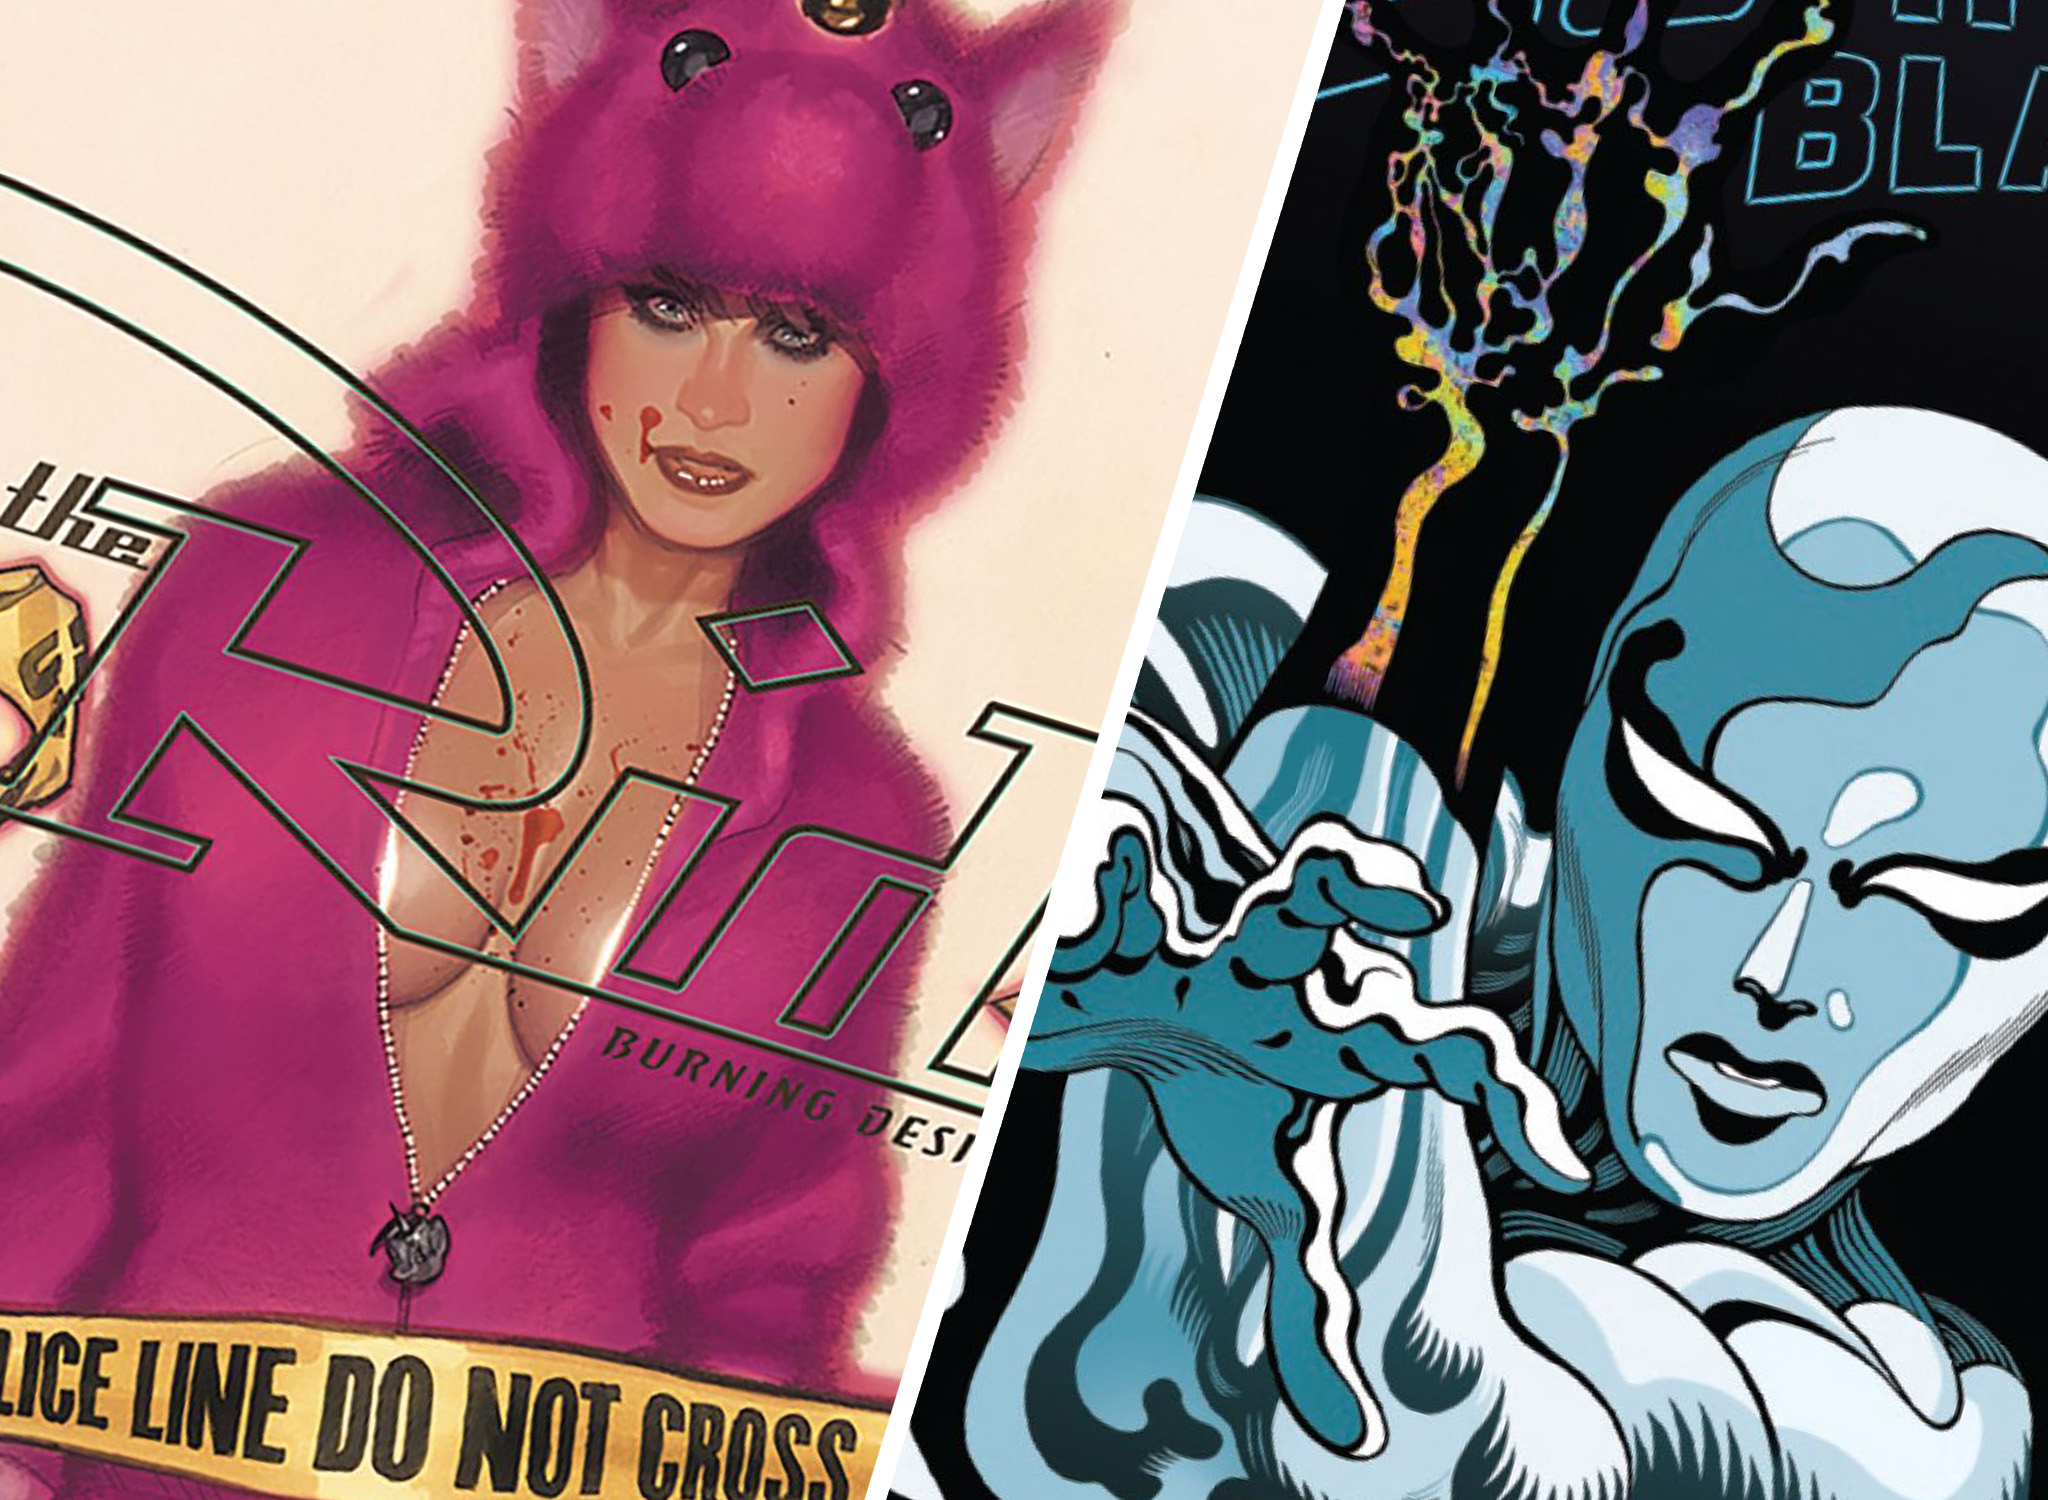 AiPT! Comics Podcast Ep 24: Favorite LGBTQ comics, dead heroes, & creative cluster effs